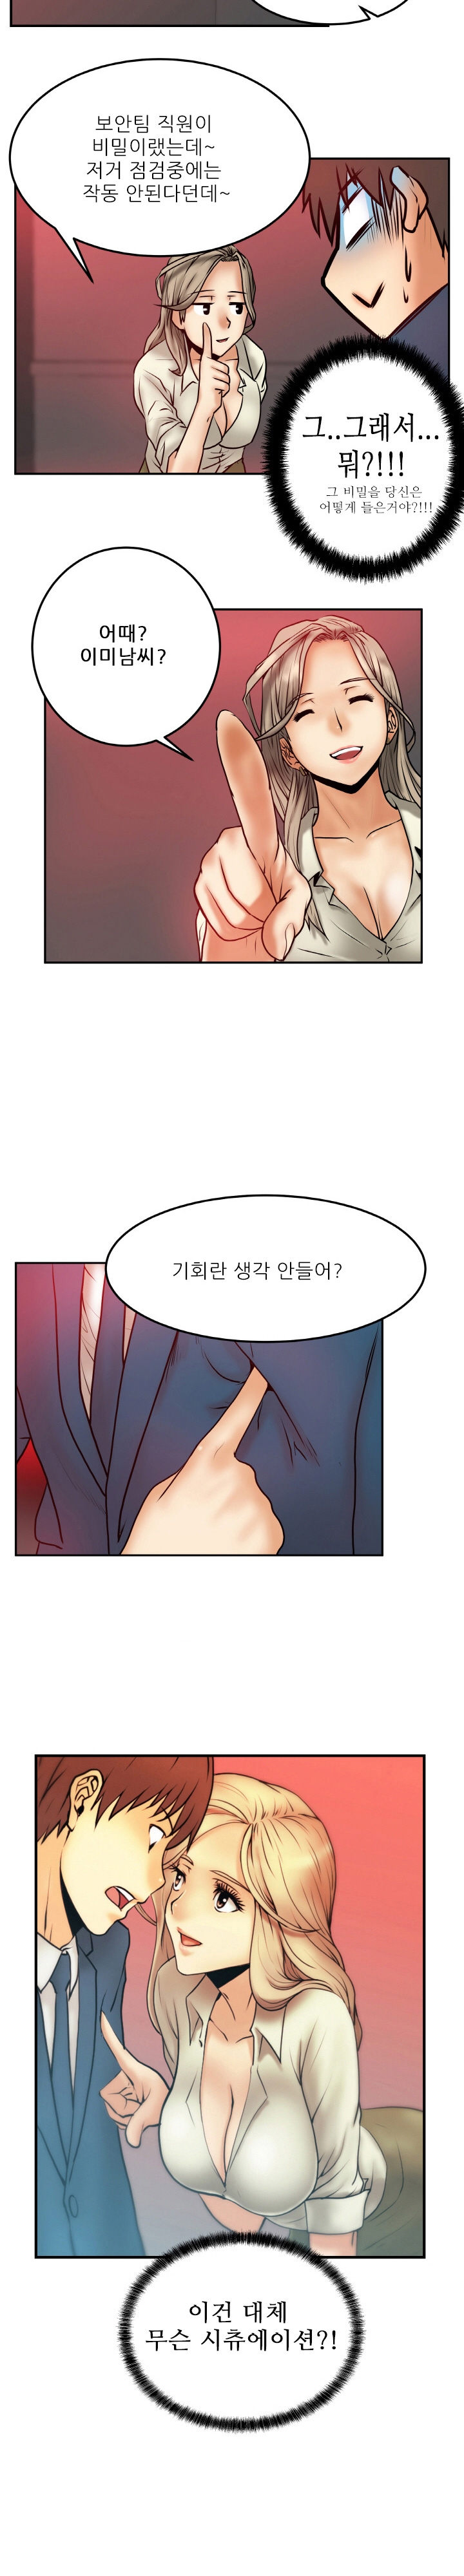 [Minu Mindu] Office Lady Vol. 1 [Korean] 7